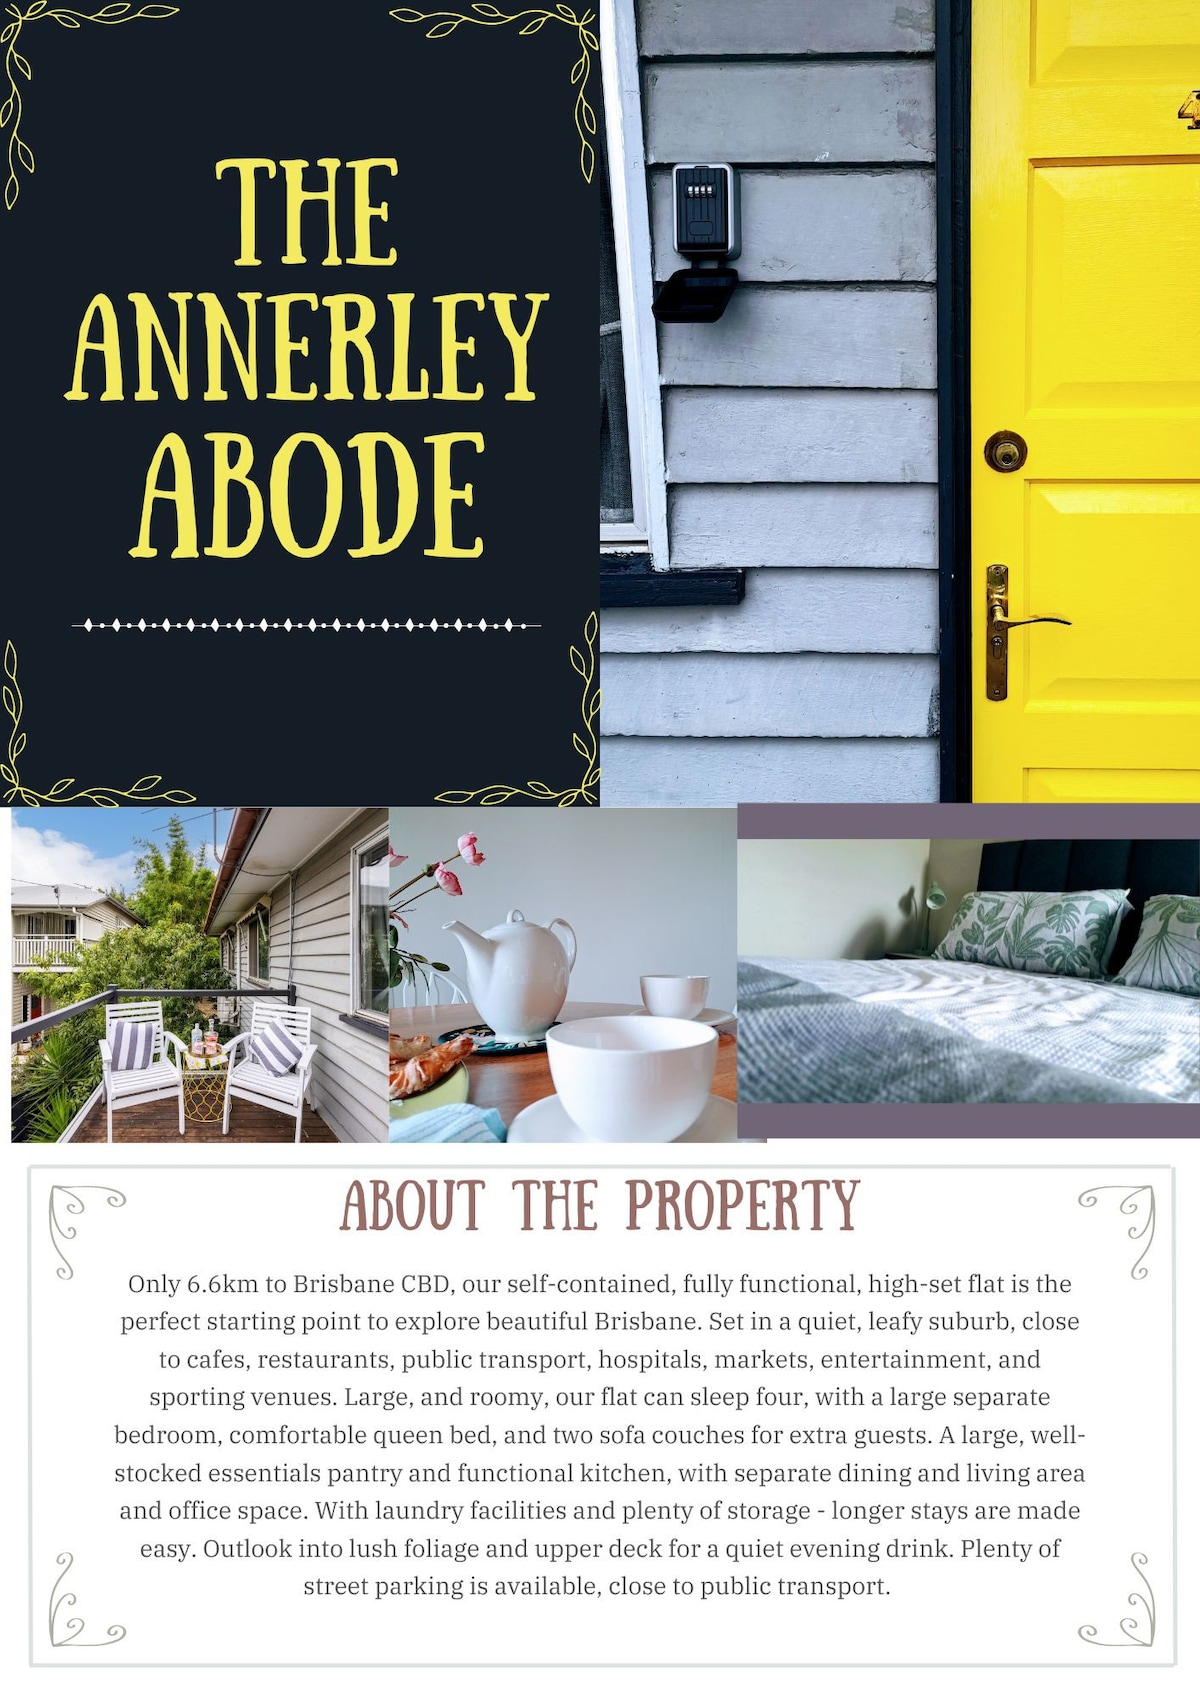 Annerley Abode